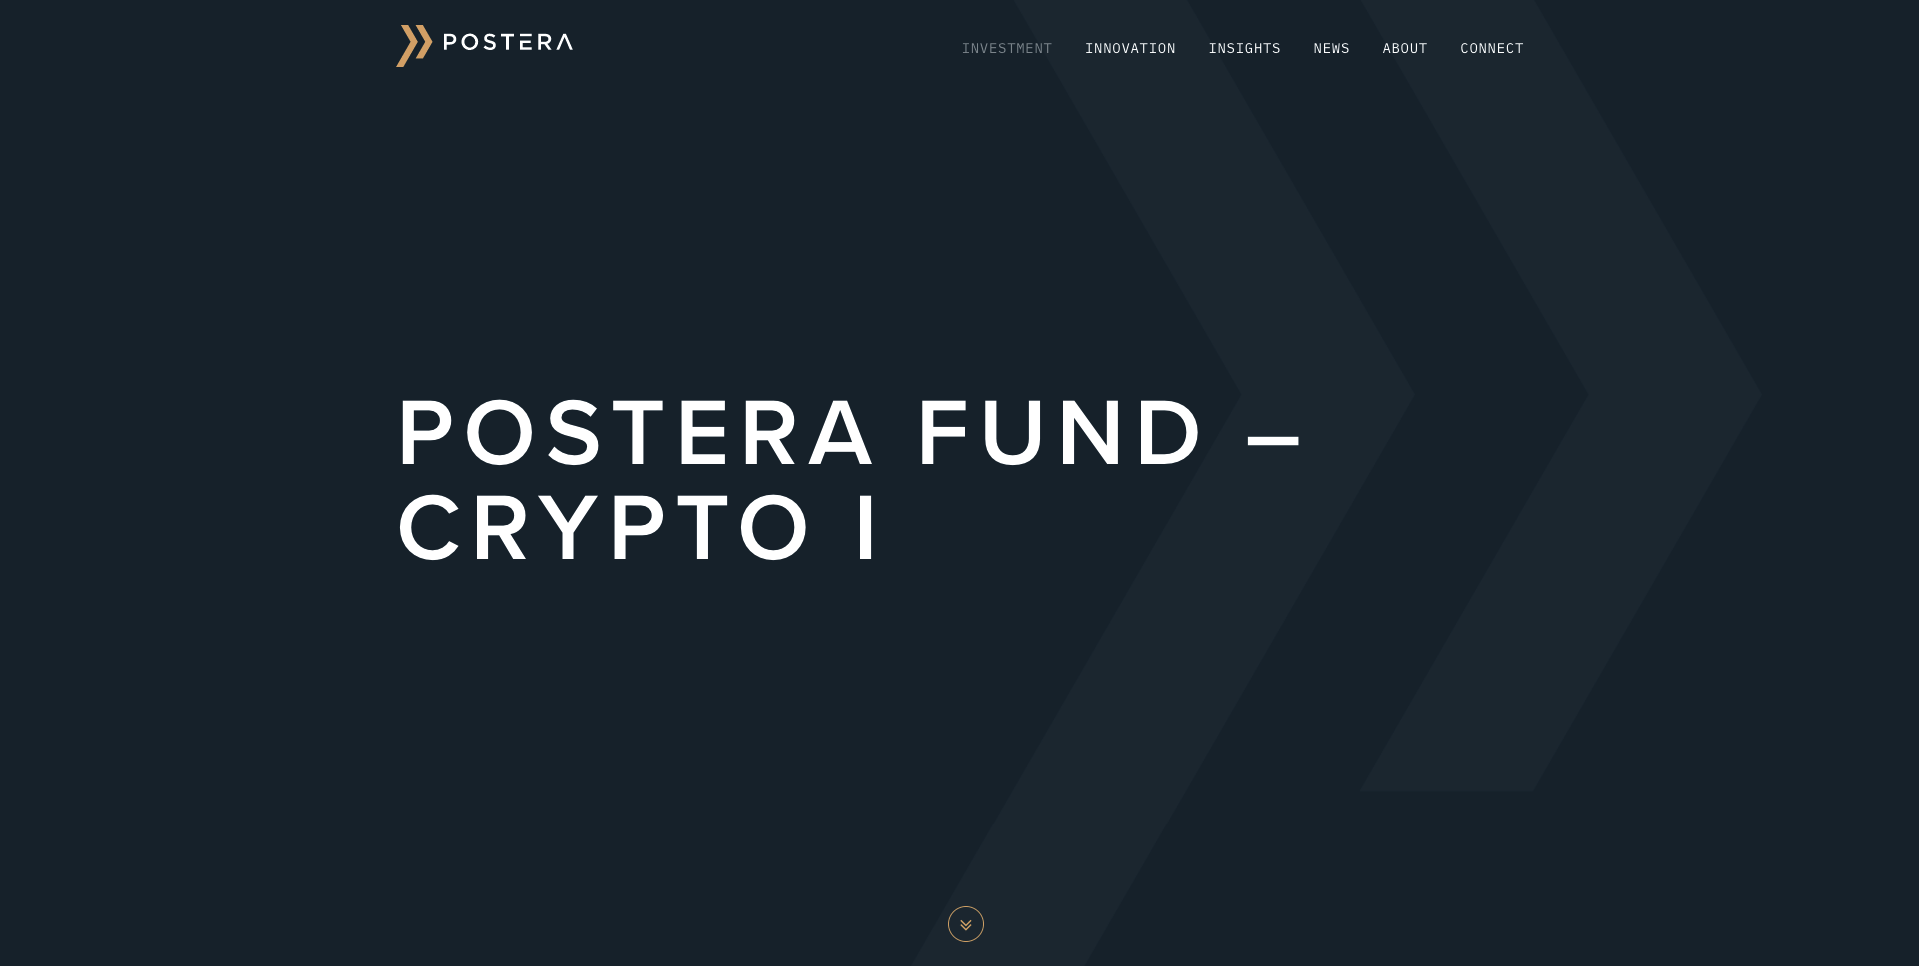 Postera Fund – Crypto I